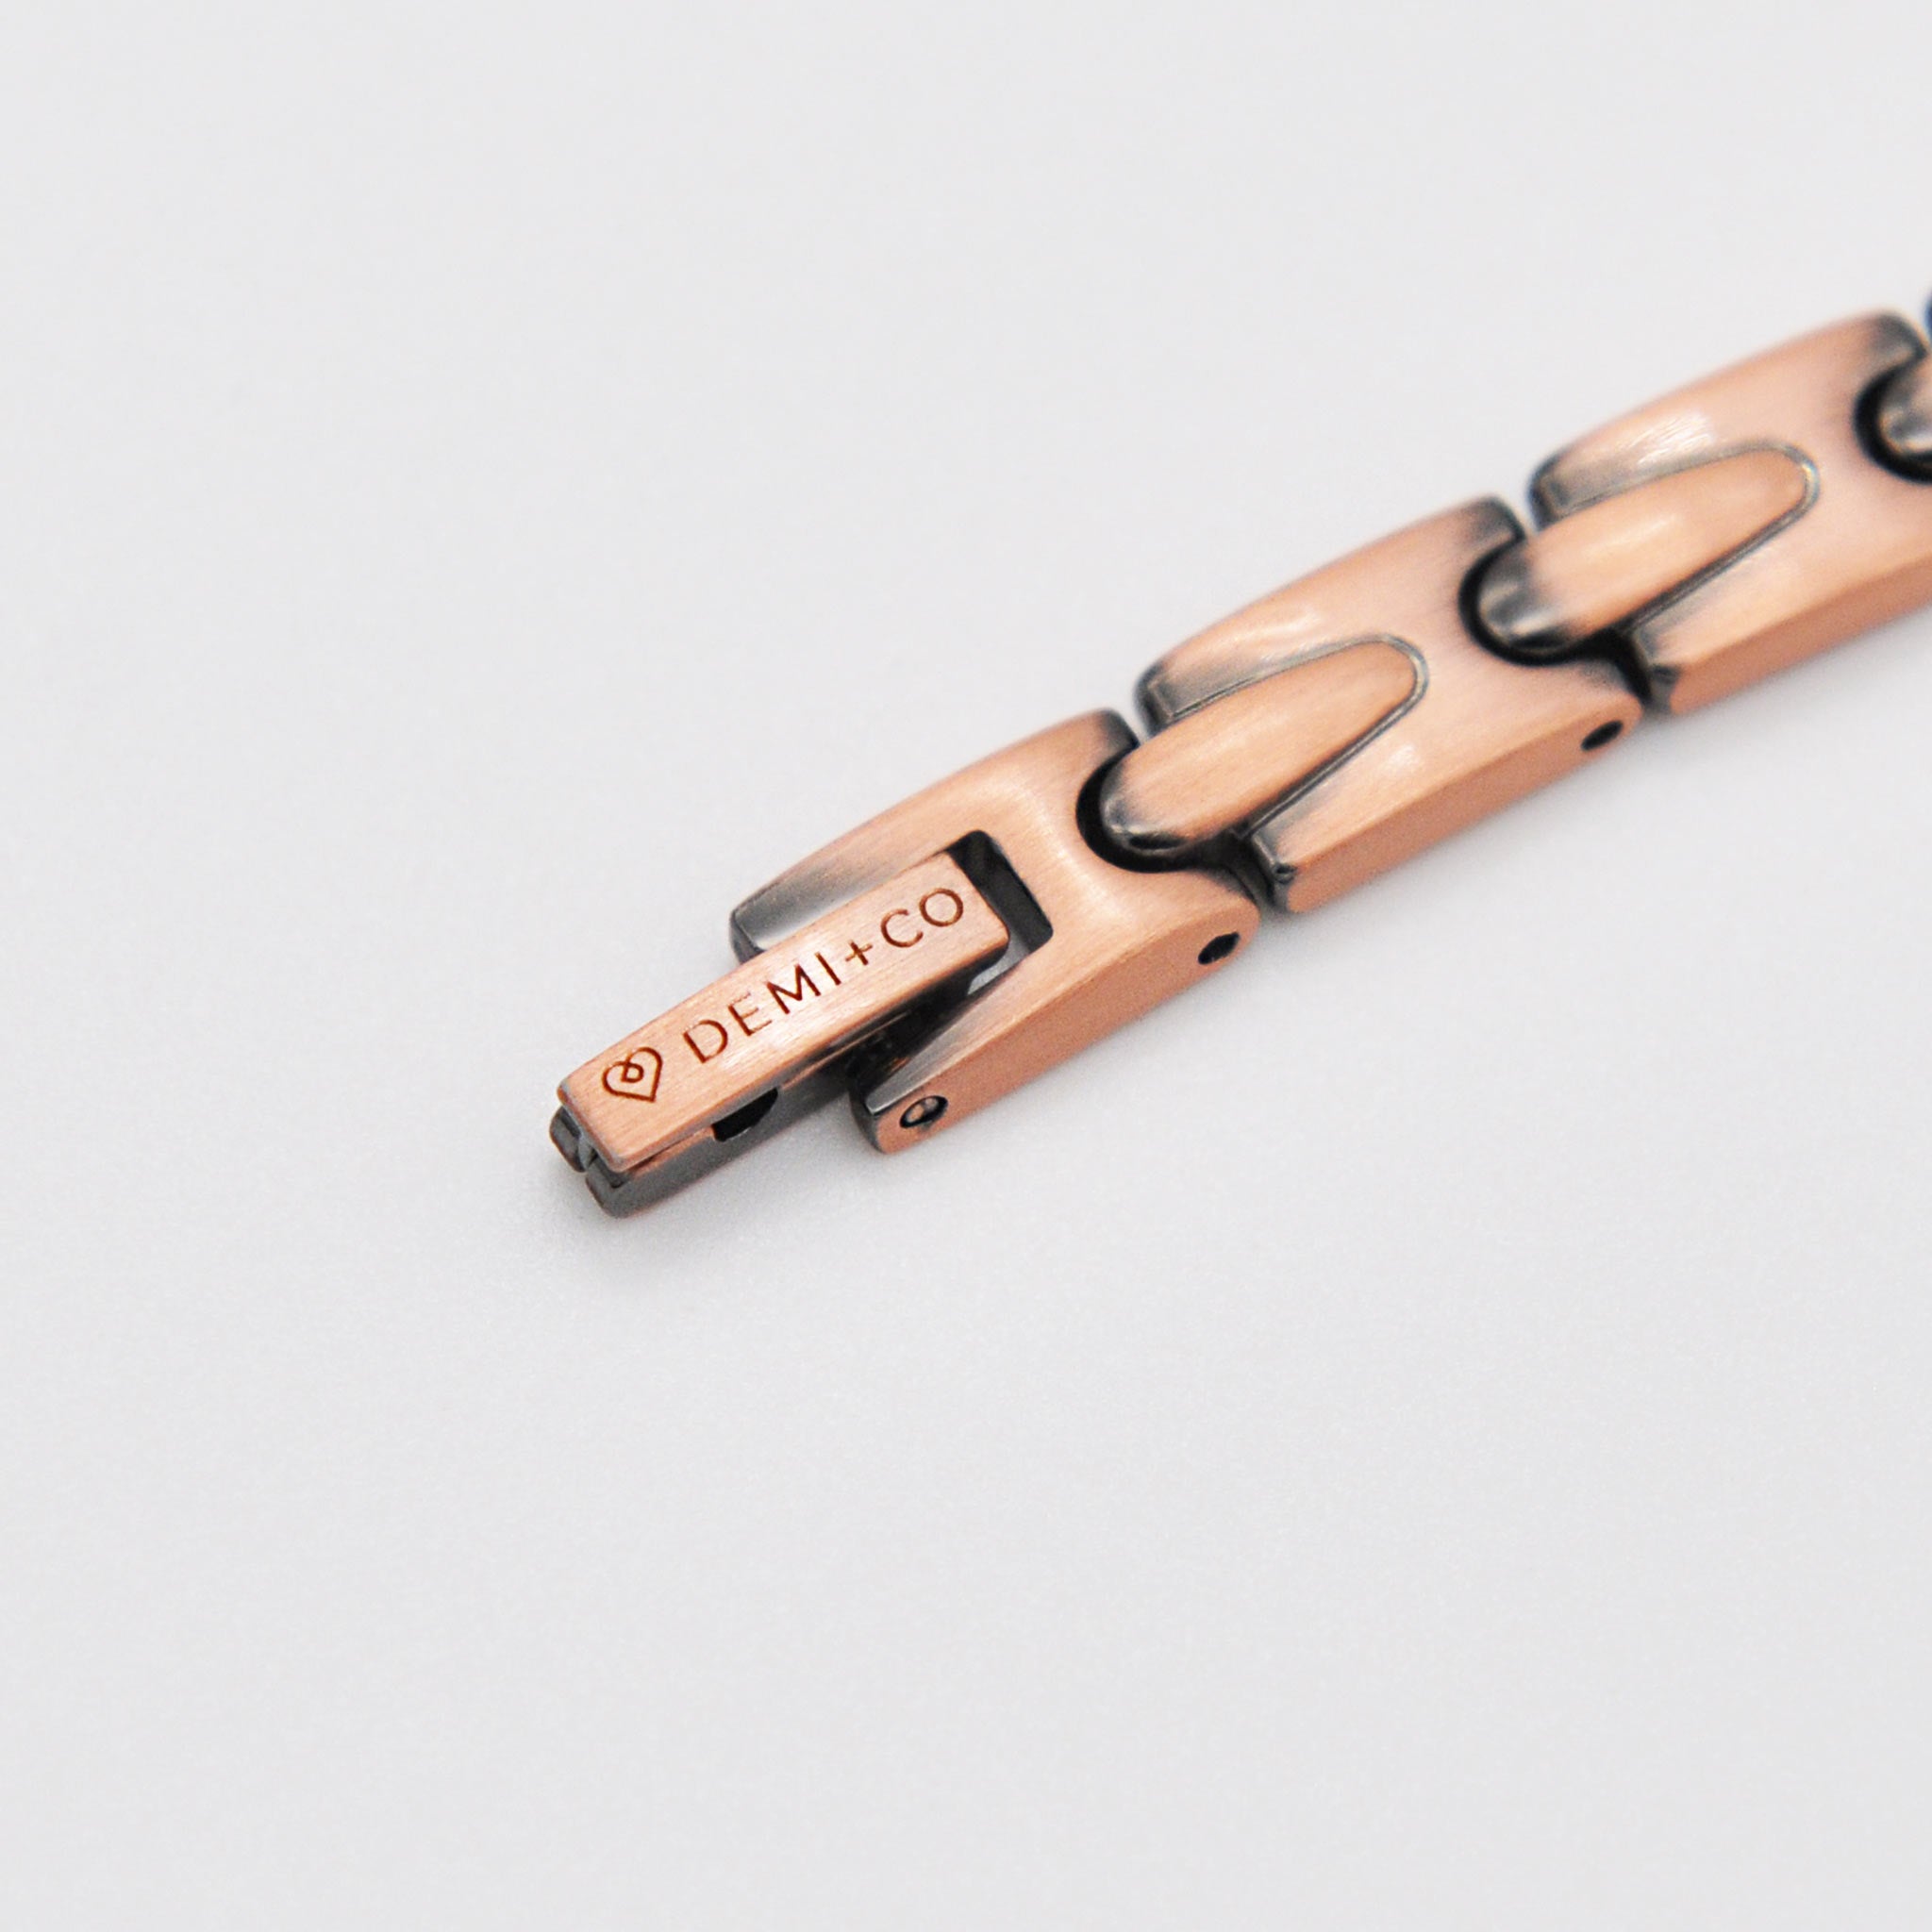 Harmony copper bracelet with diamante